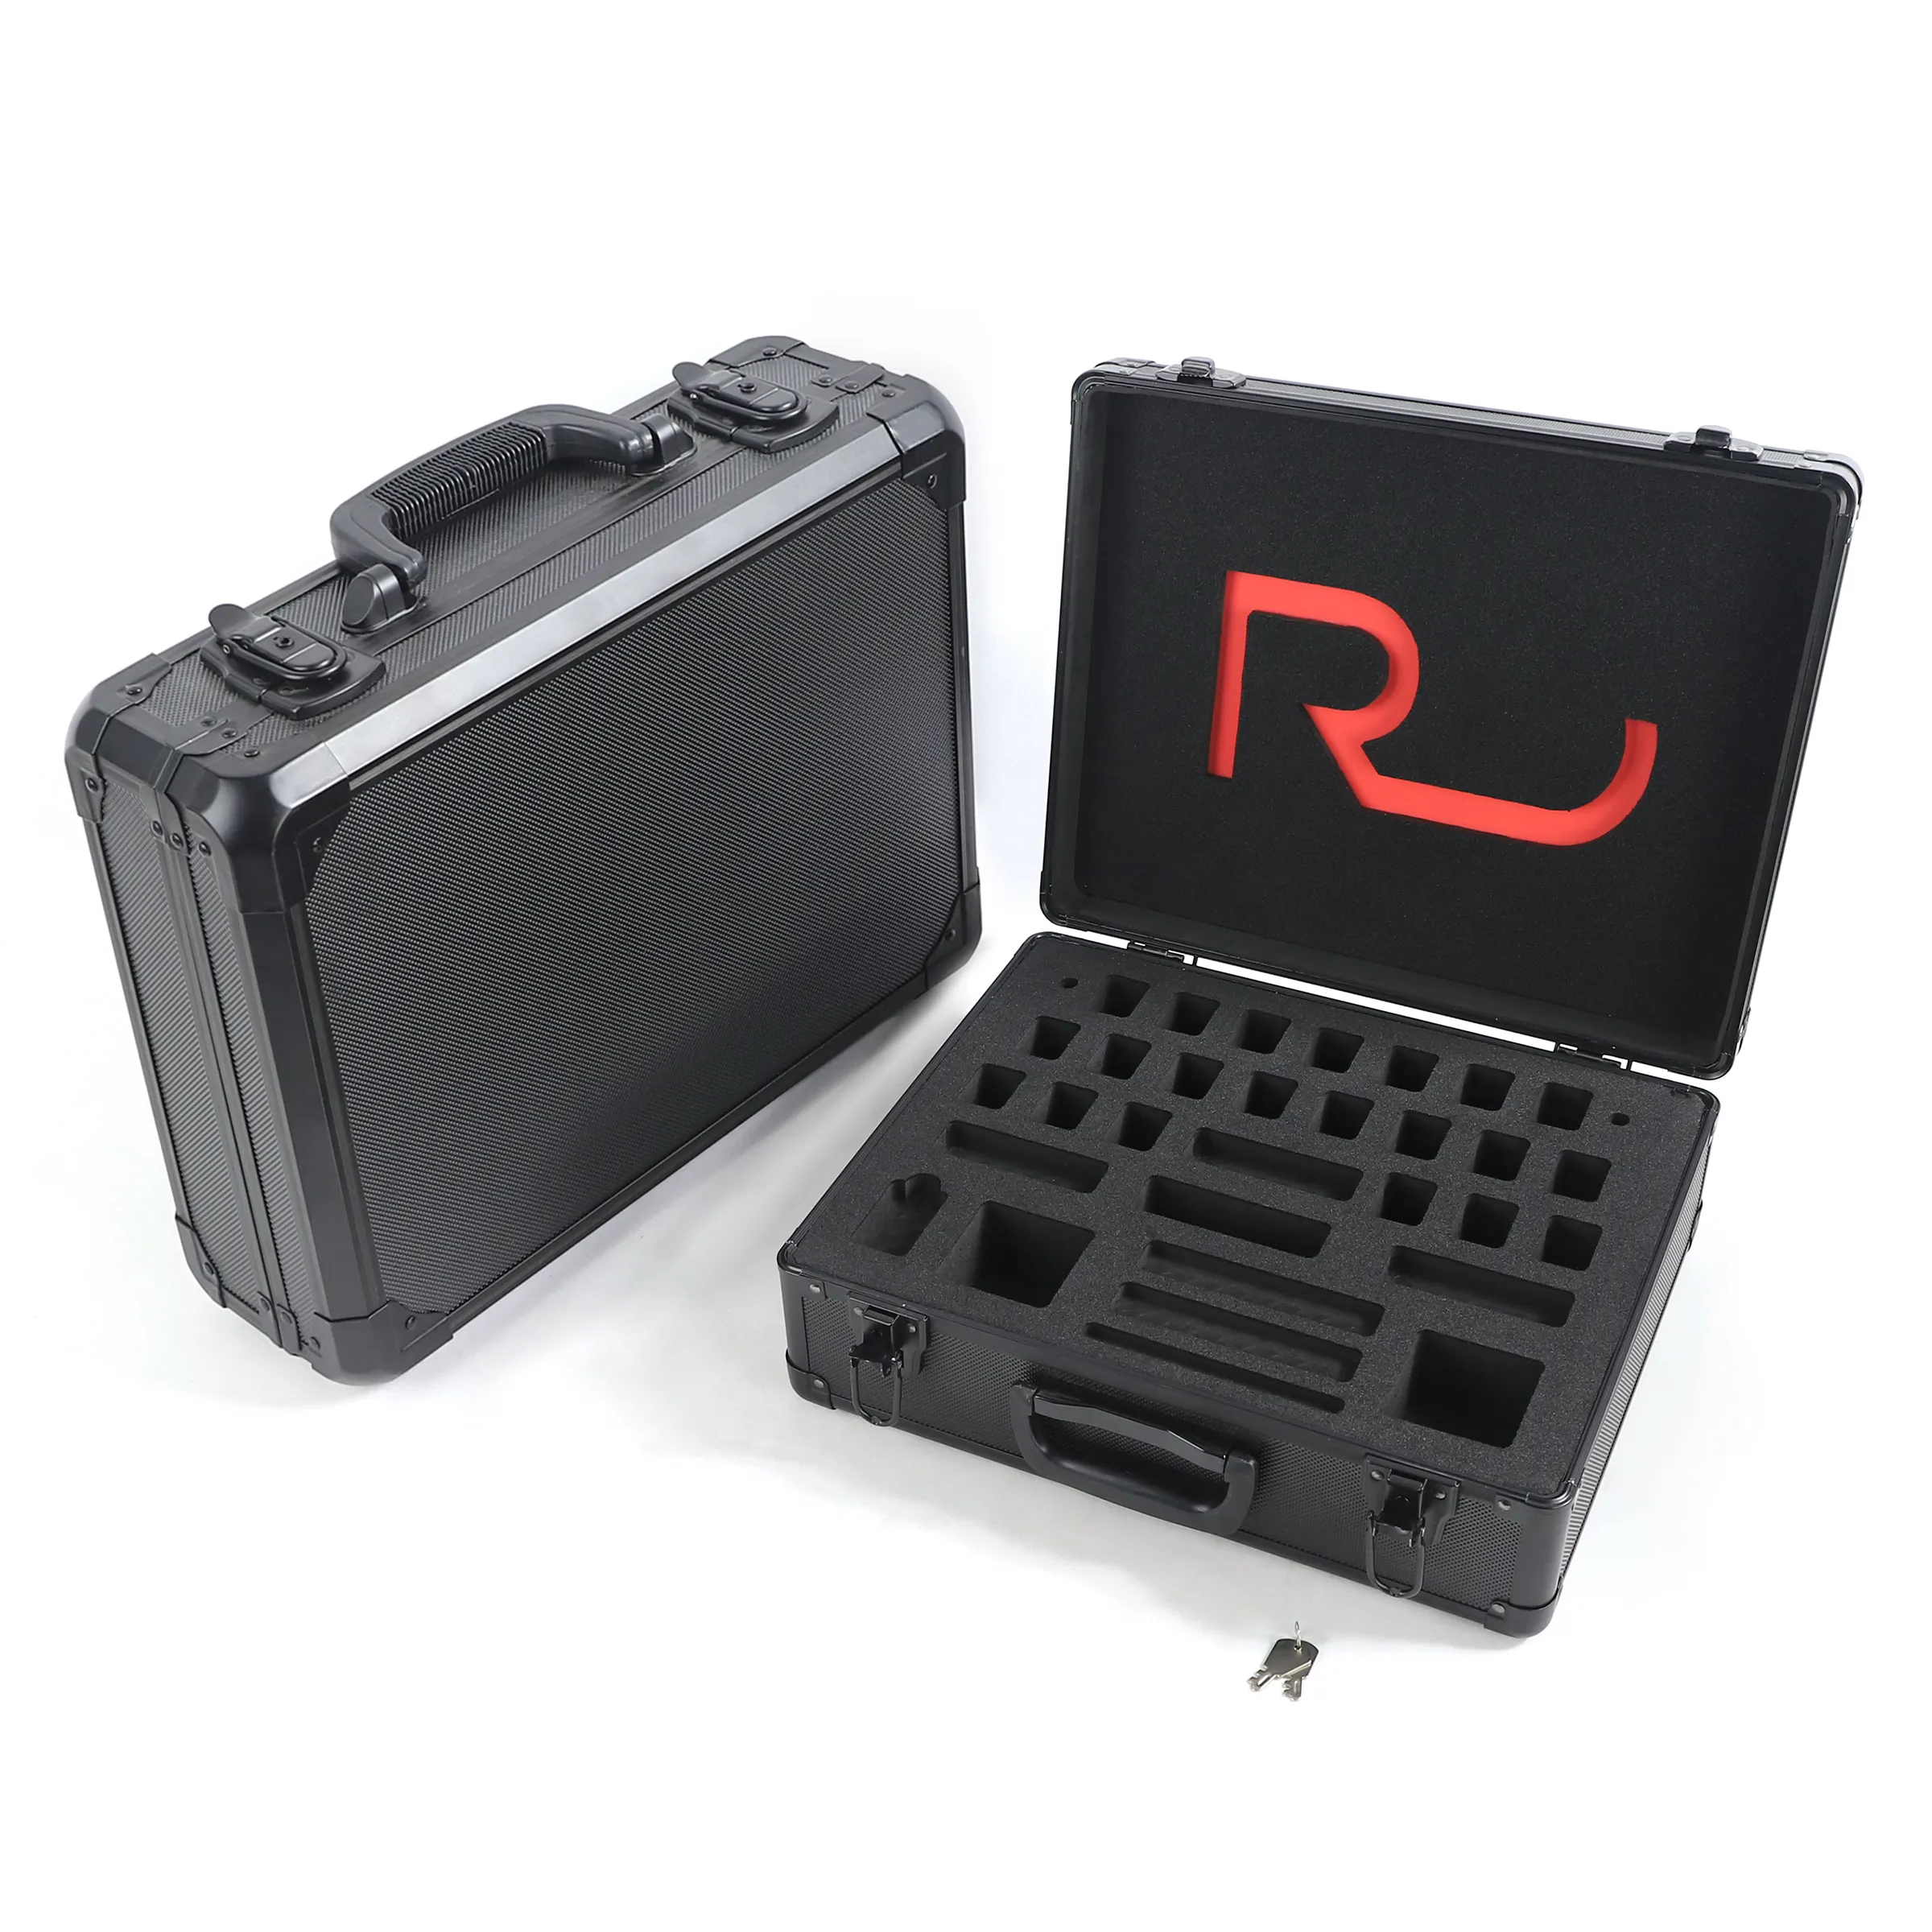 Caja protectora de equipo de almacenamiento de aluminio plateado resistente personalizada caja de herramientas electrónicas con espuma